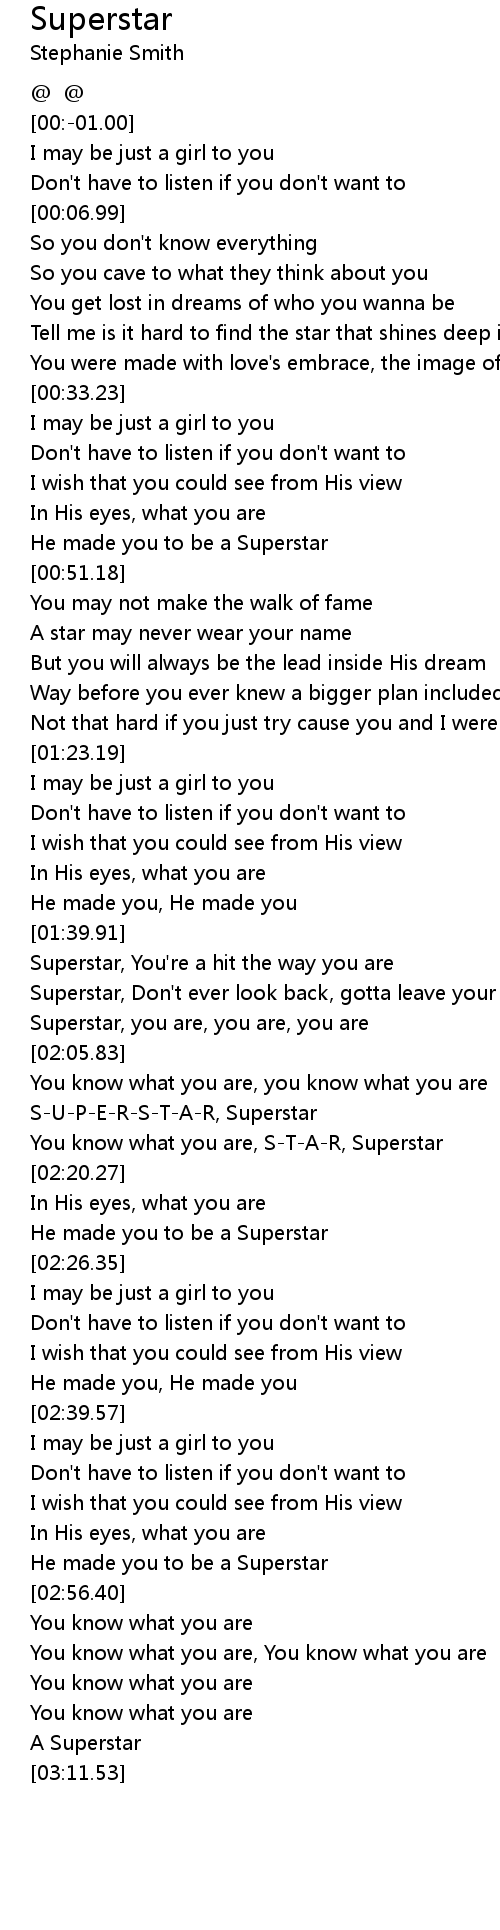 superstar lyrics